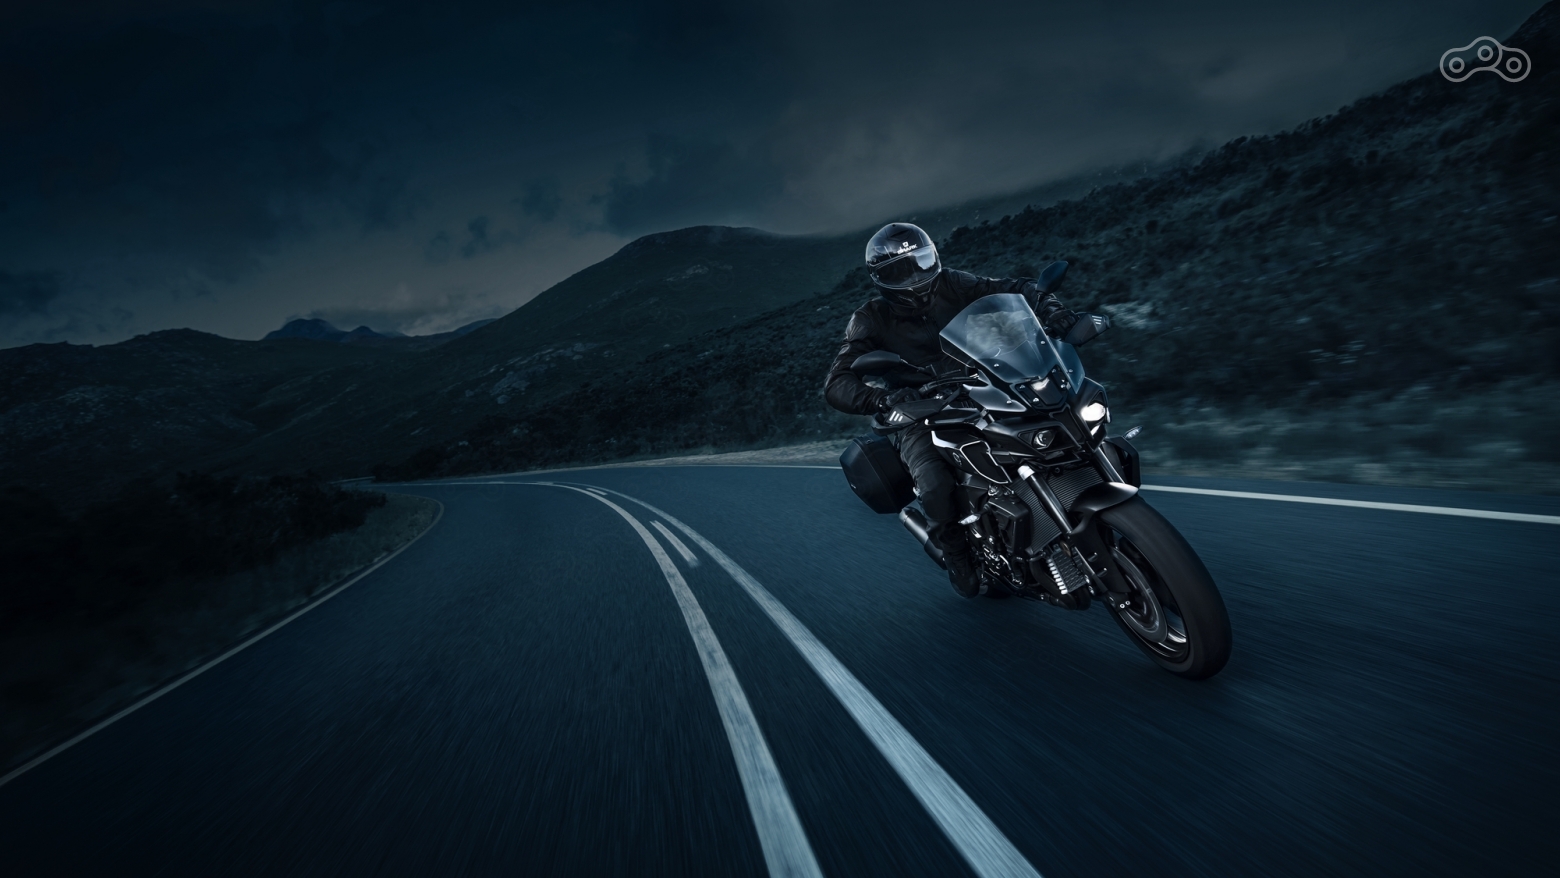 Мотоцикл Yamaha MT-10 Touring Edition 2017, версия для путешествий